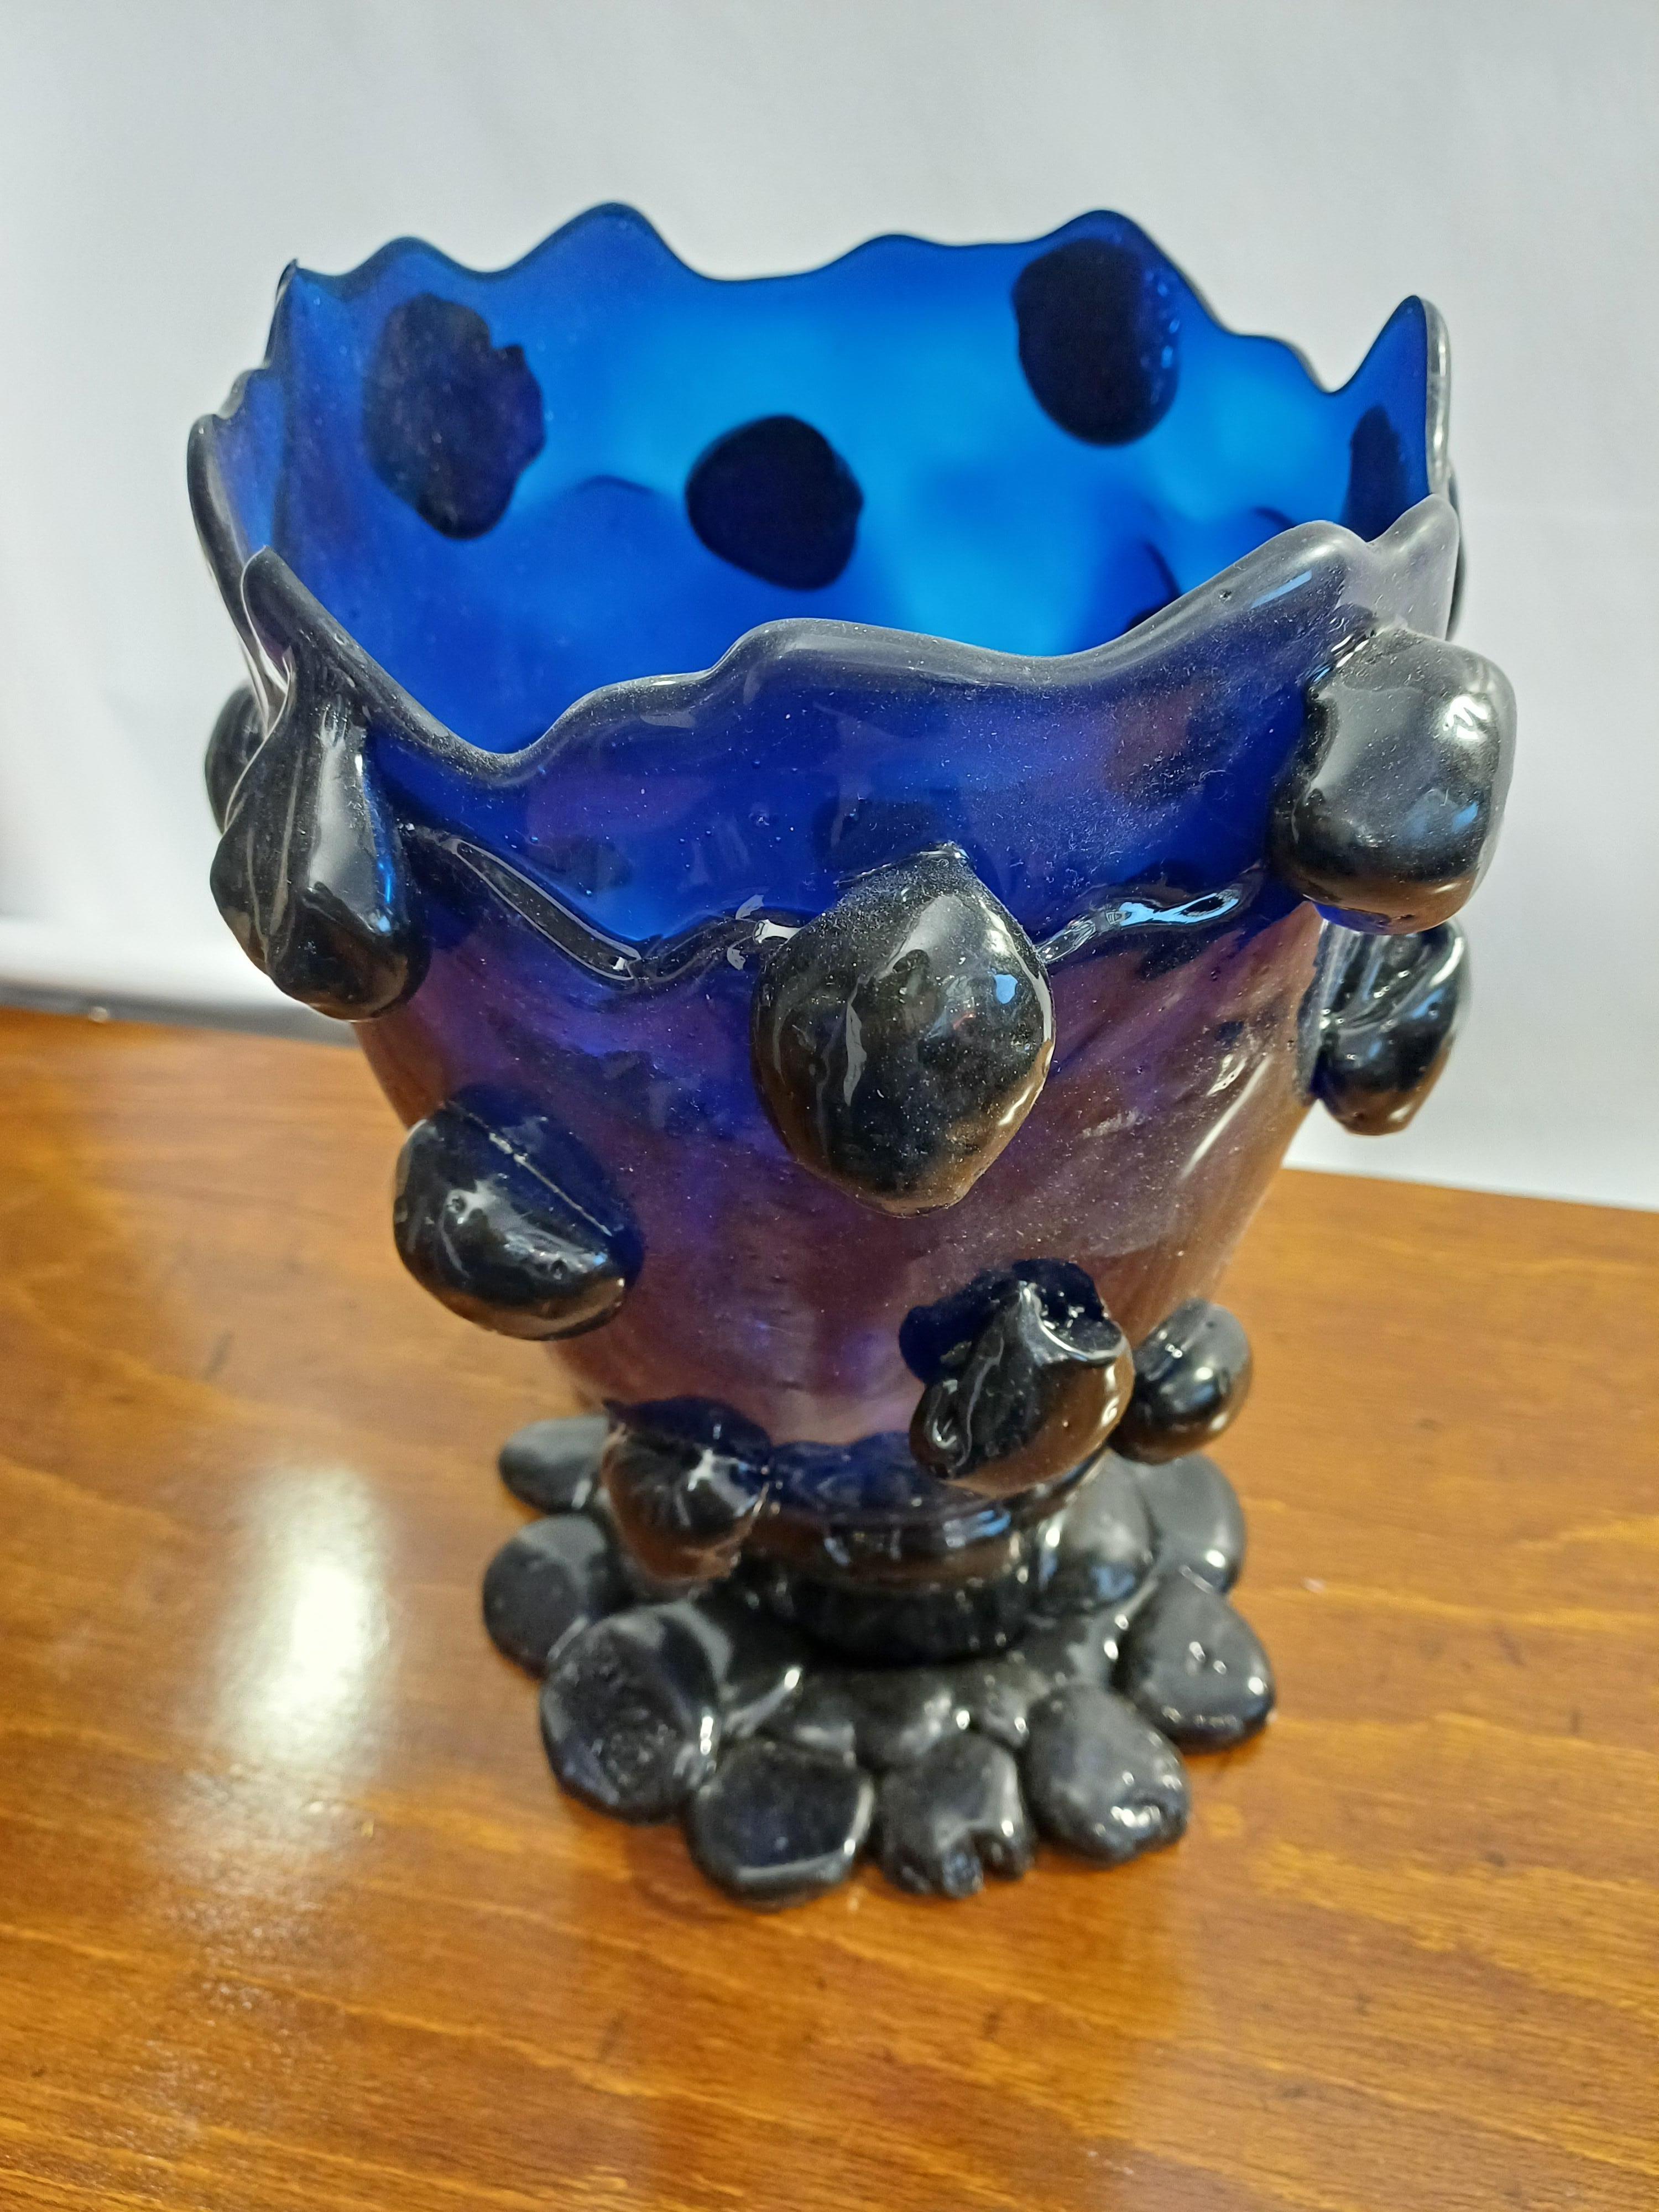 Vaso in resina Blu disegnato da Gaetano Pesce e prodotto dalla Fish Design Modello Nugget
Marchiato alla base, con certificato di autenticità.
Misure: diametro 18 cm, altezza 27 cm